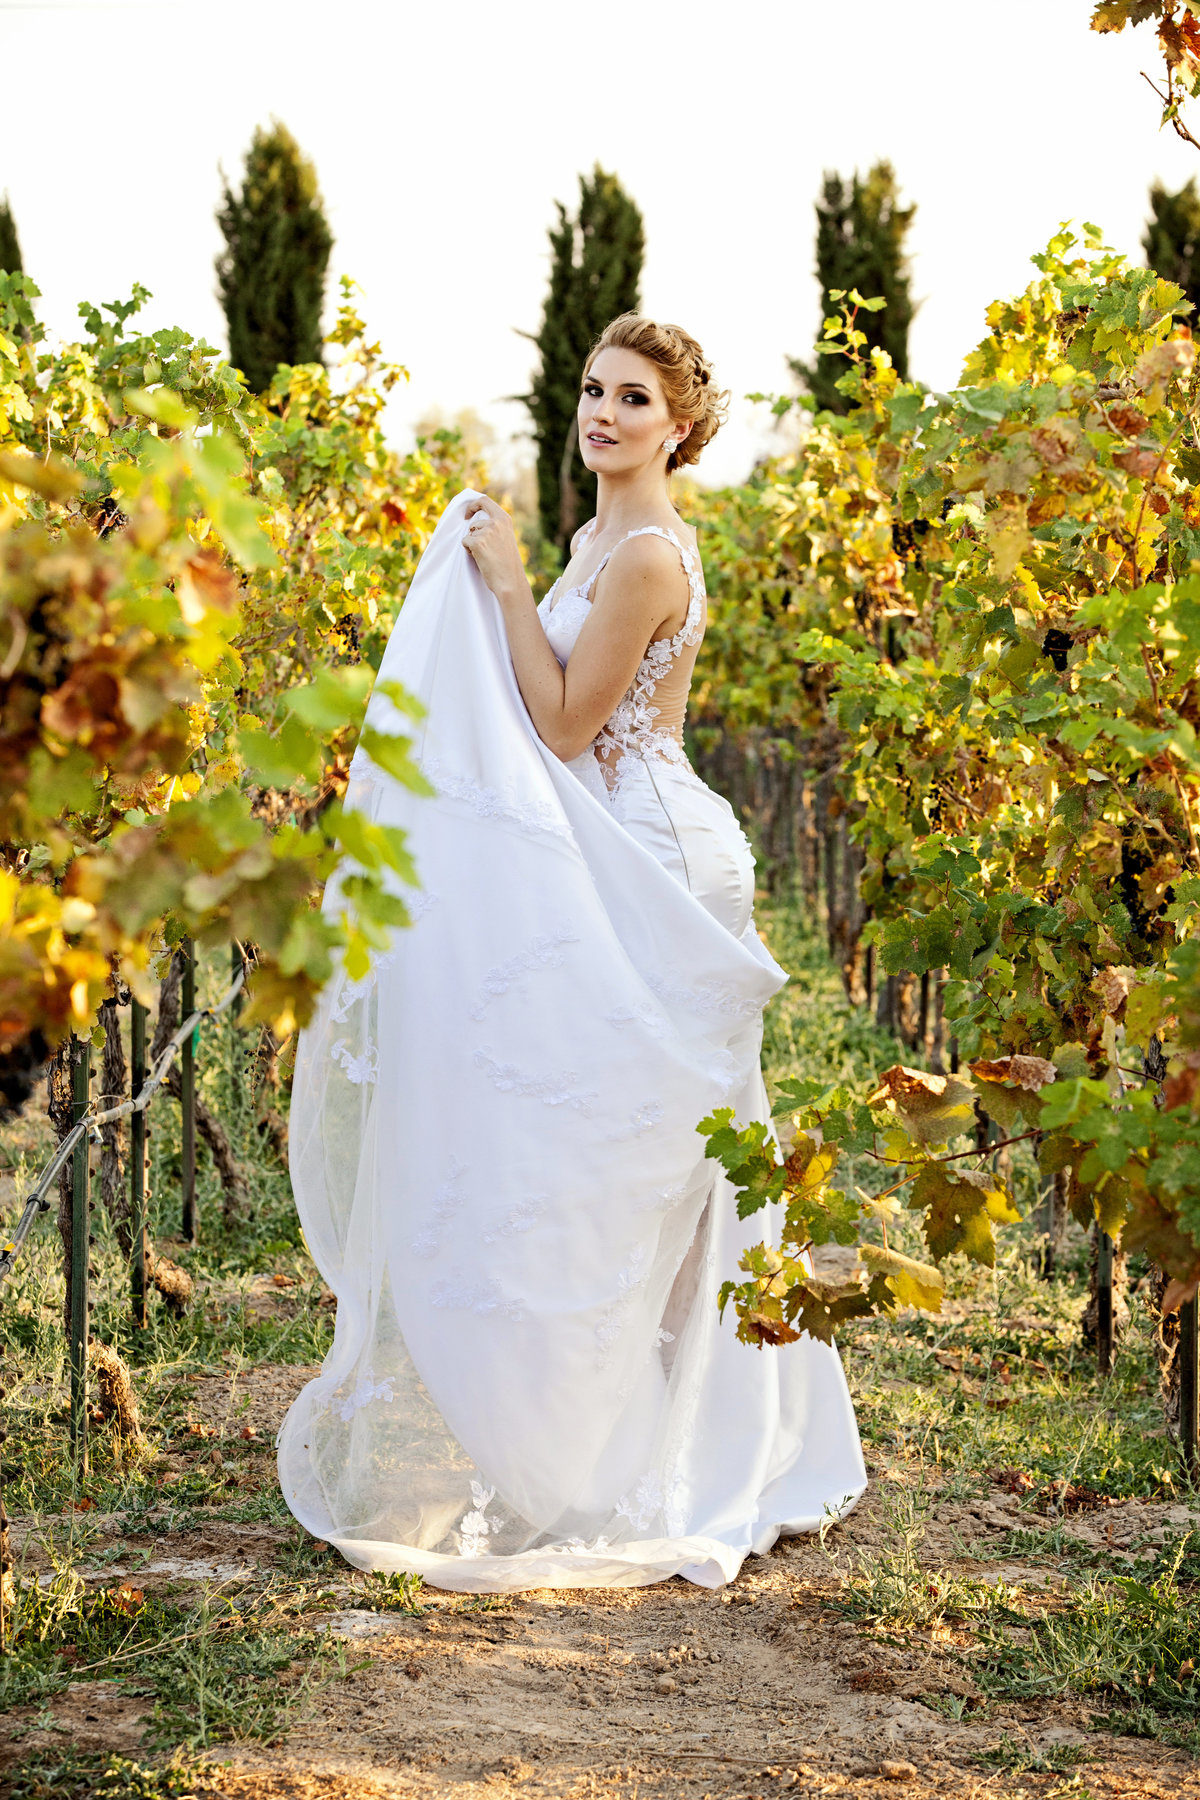 Winery-wedding-bride-groom-014